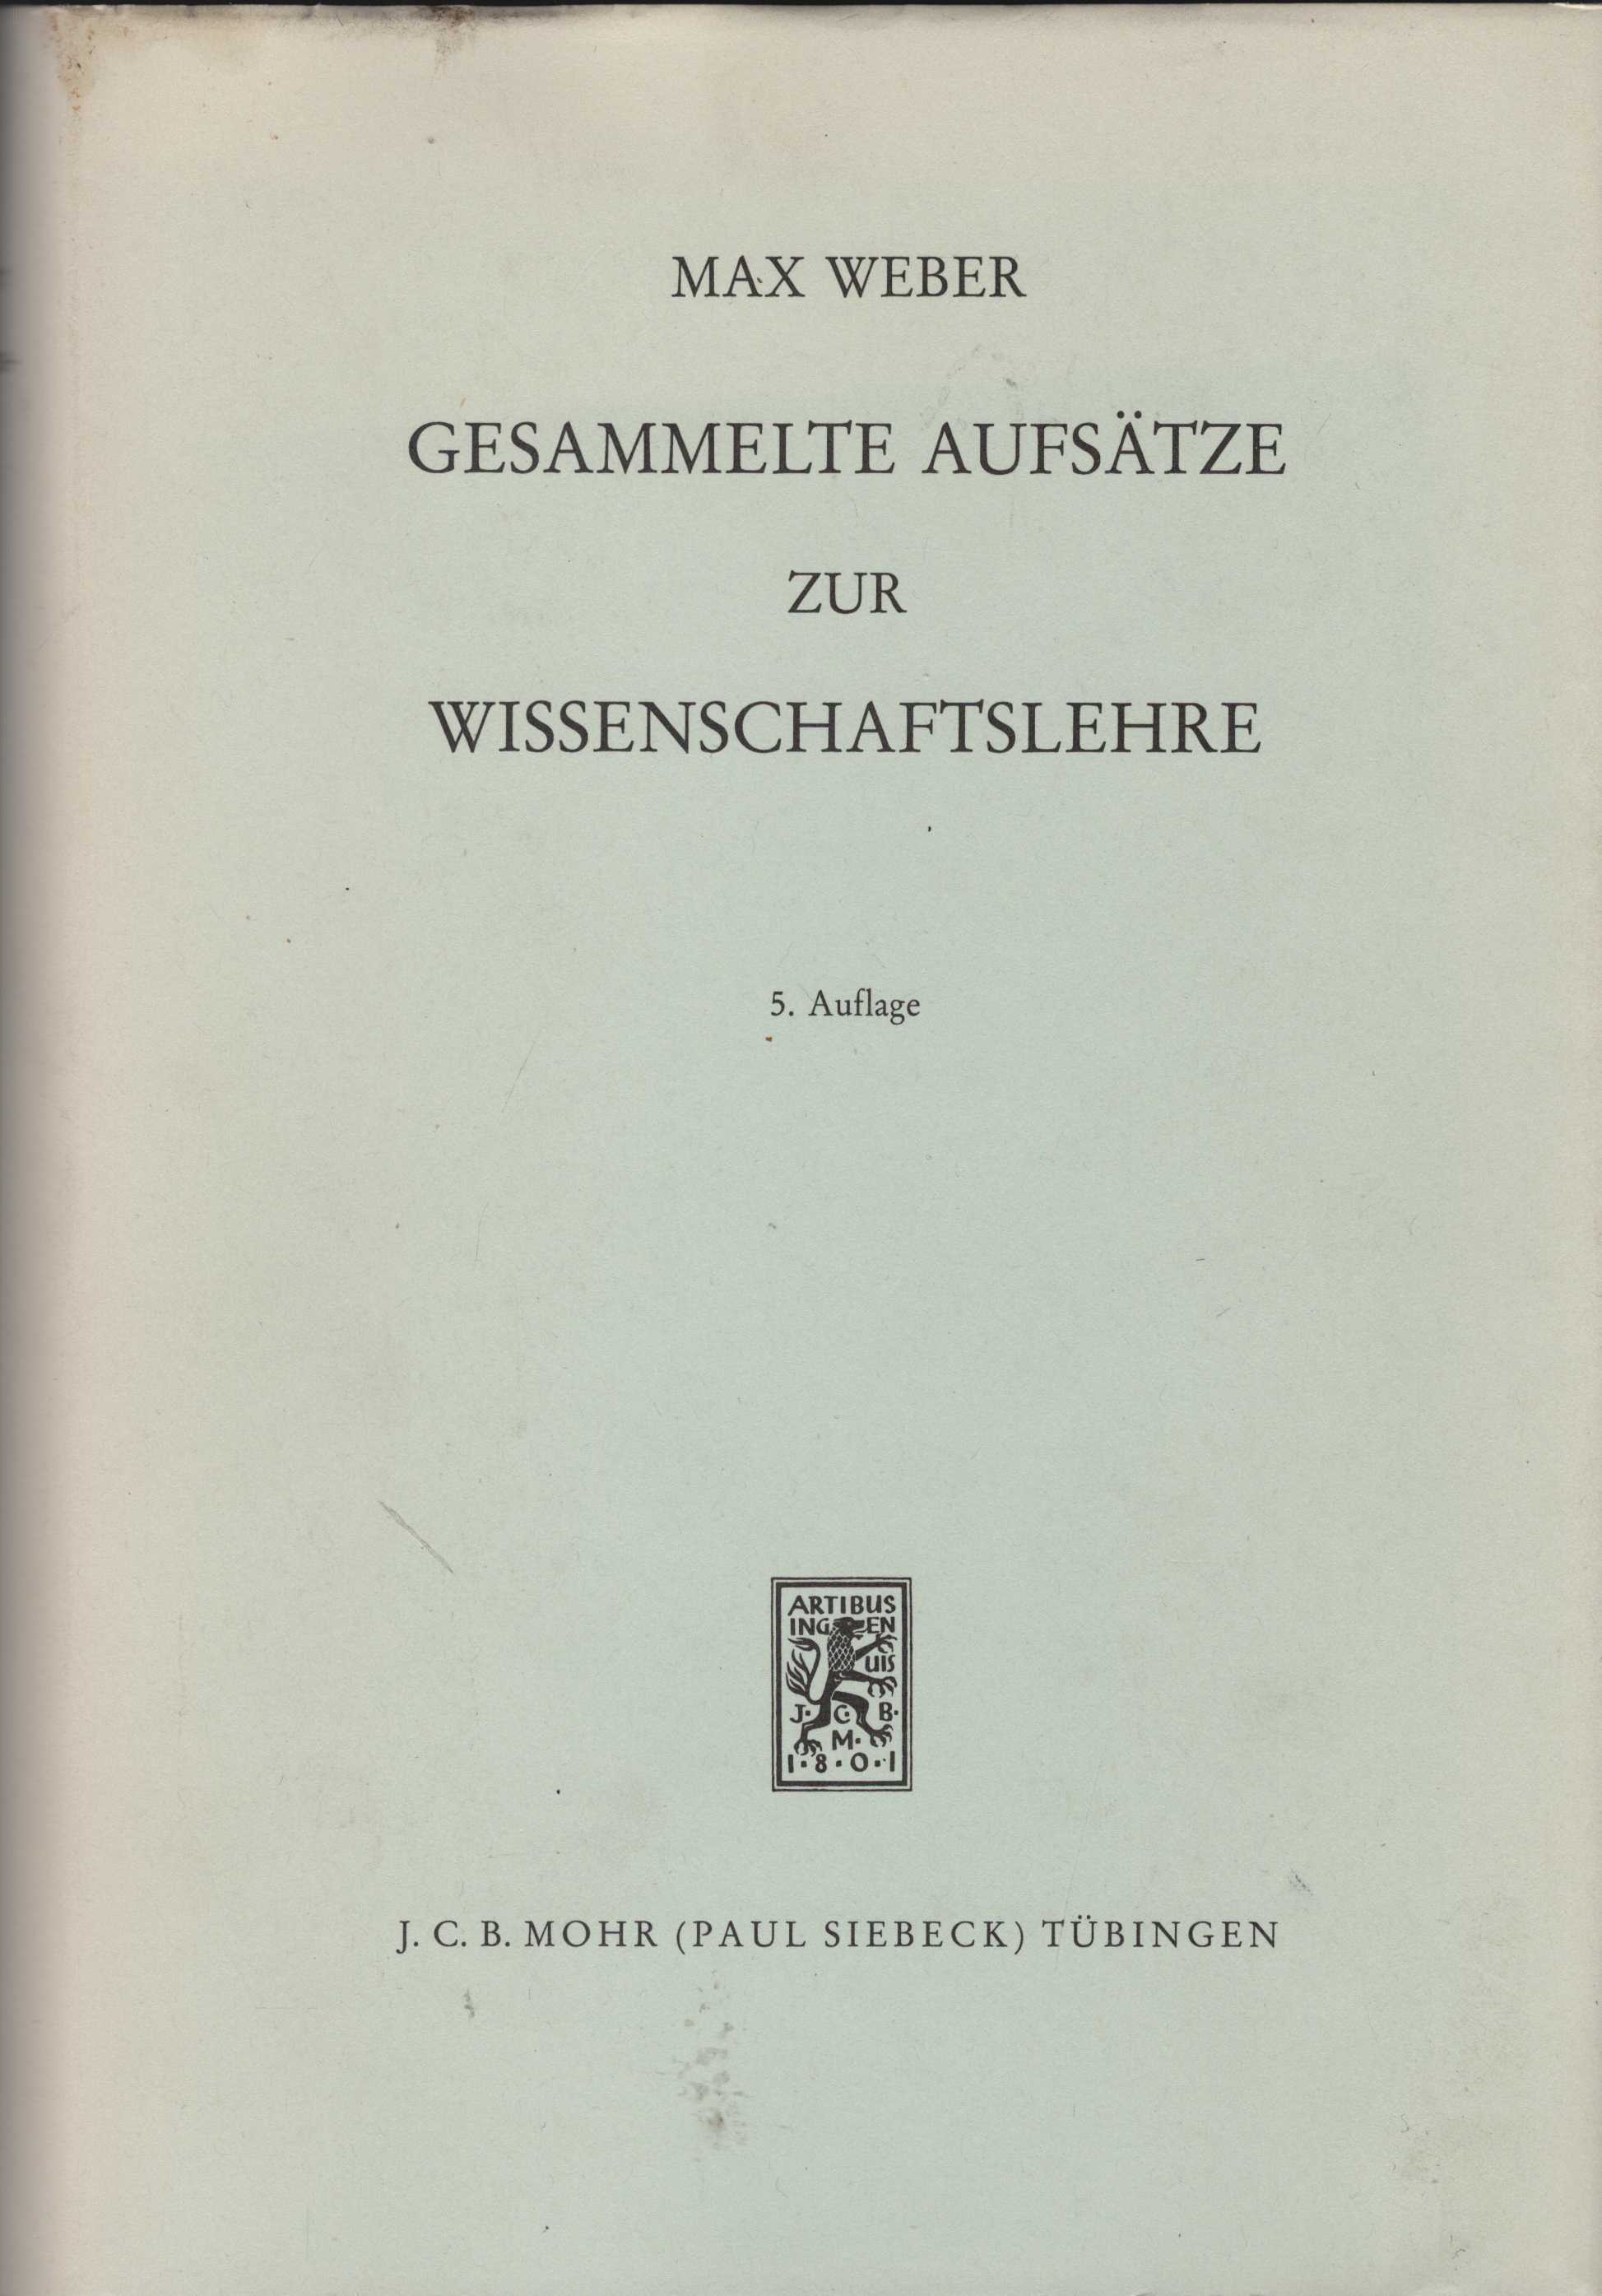 Gesammelte Aufsätze zur Wissenschaftslehre. Herausgegeben von Johannes Winckelmann. - Weber, Max